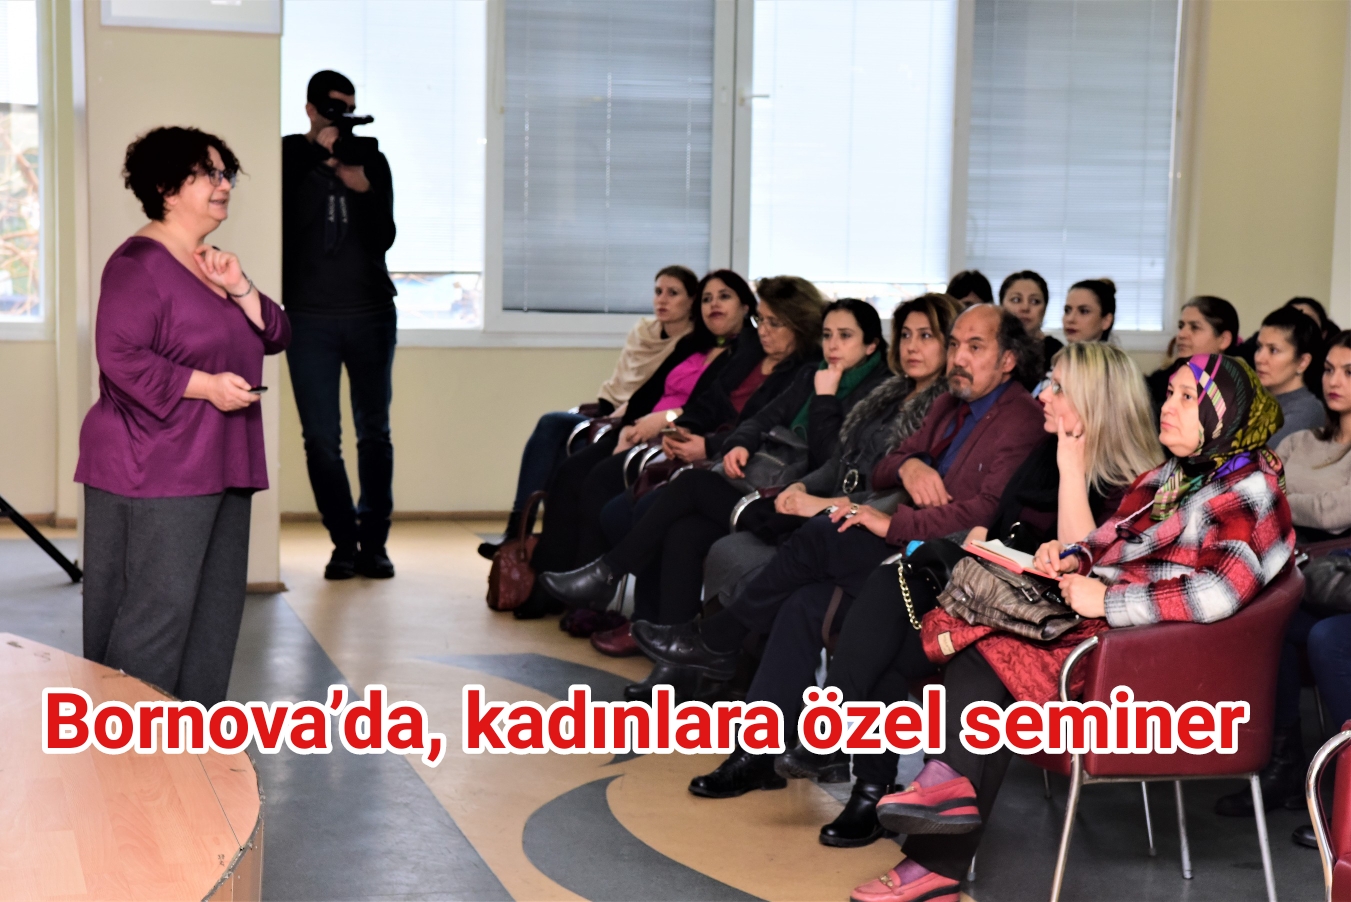 Bornova’da, kadınların karar alma sürecine katılımı tartışıldı